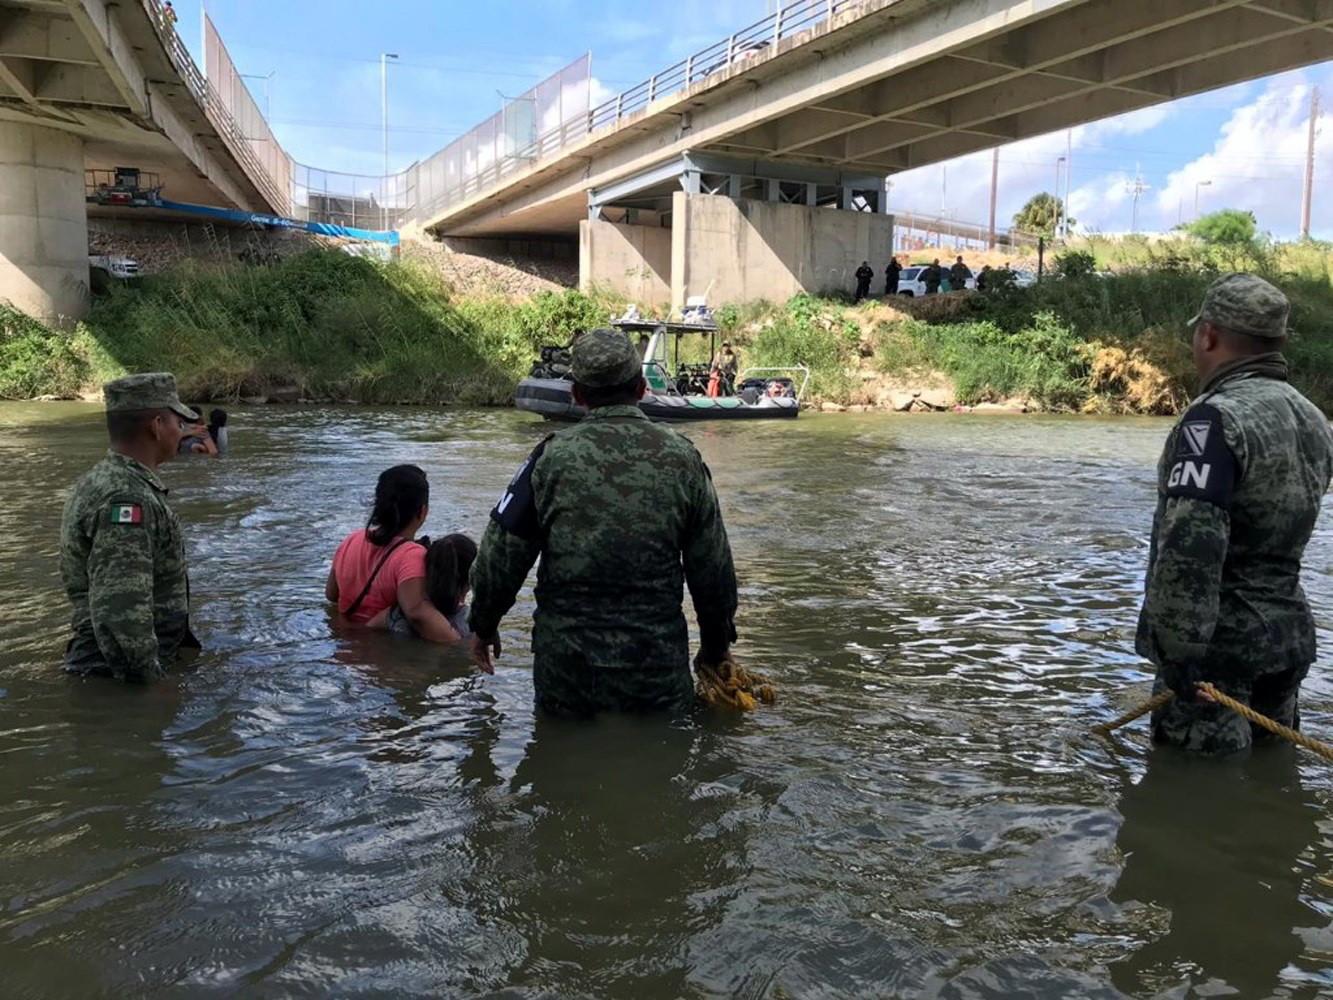 Meksyk: Gwardia Narodowa przekonują gwatemalską rodzinę, by zrezygnowała z przekraczania Rio Bravo (rzeki Rio Grande) przy moście granicznym Puente Nuevo w Tamaulipas, fot. Marco Rodriguez, PAP/EPA.